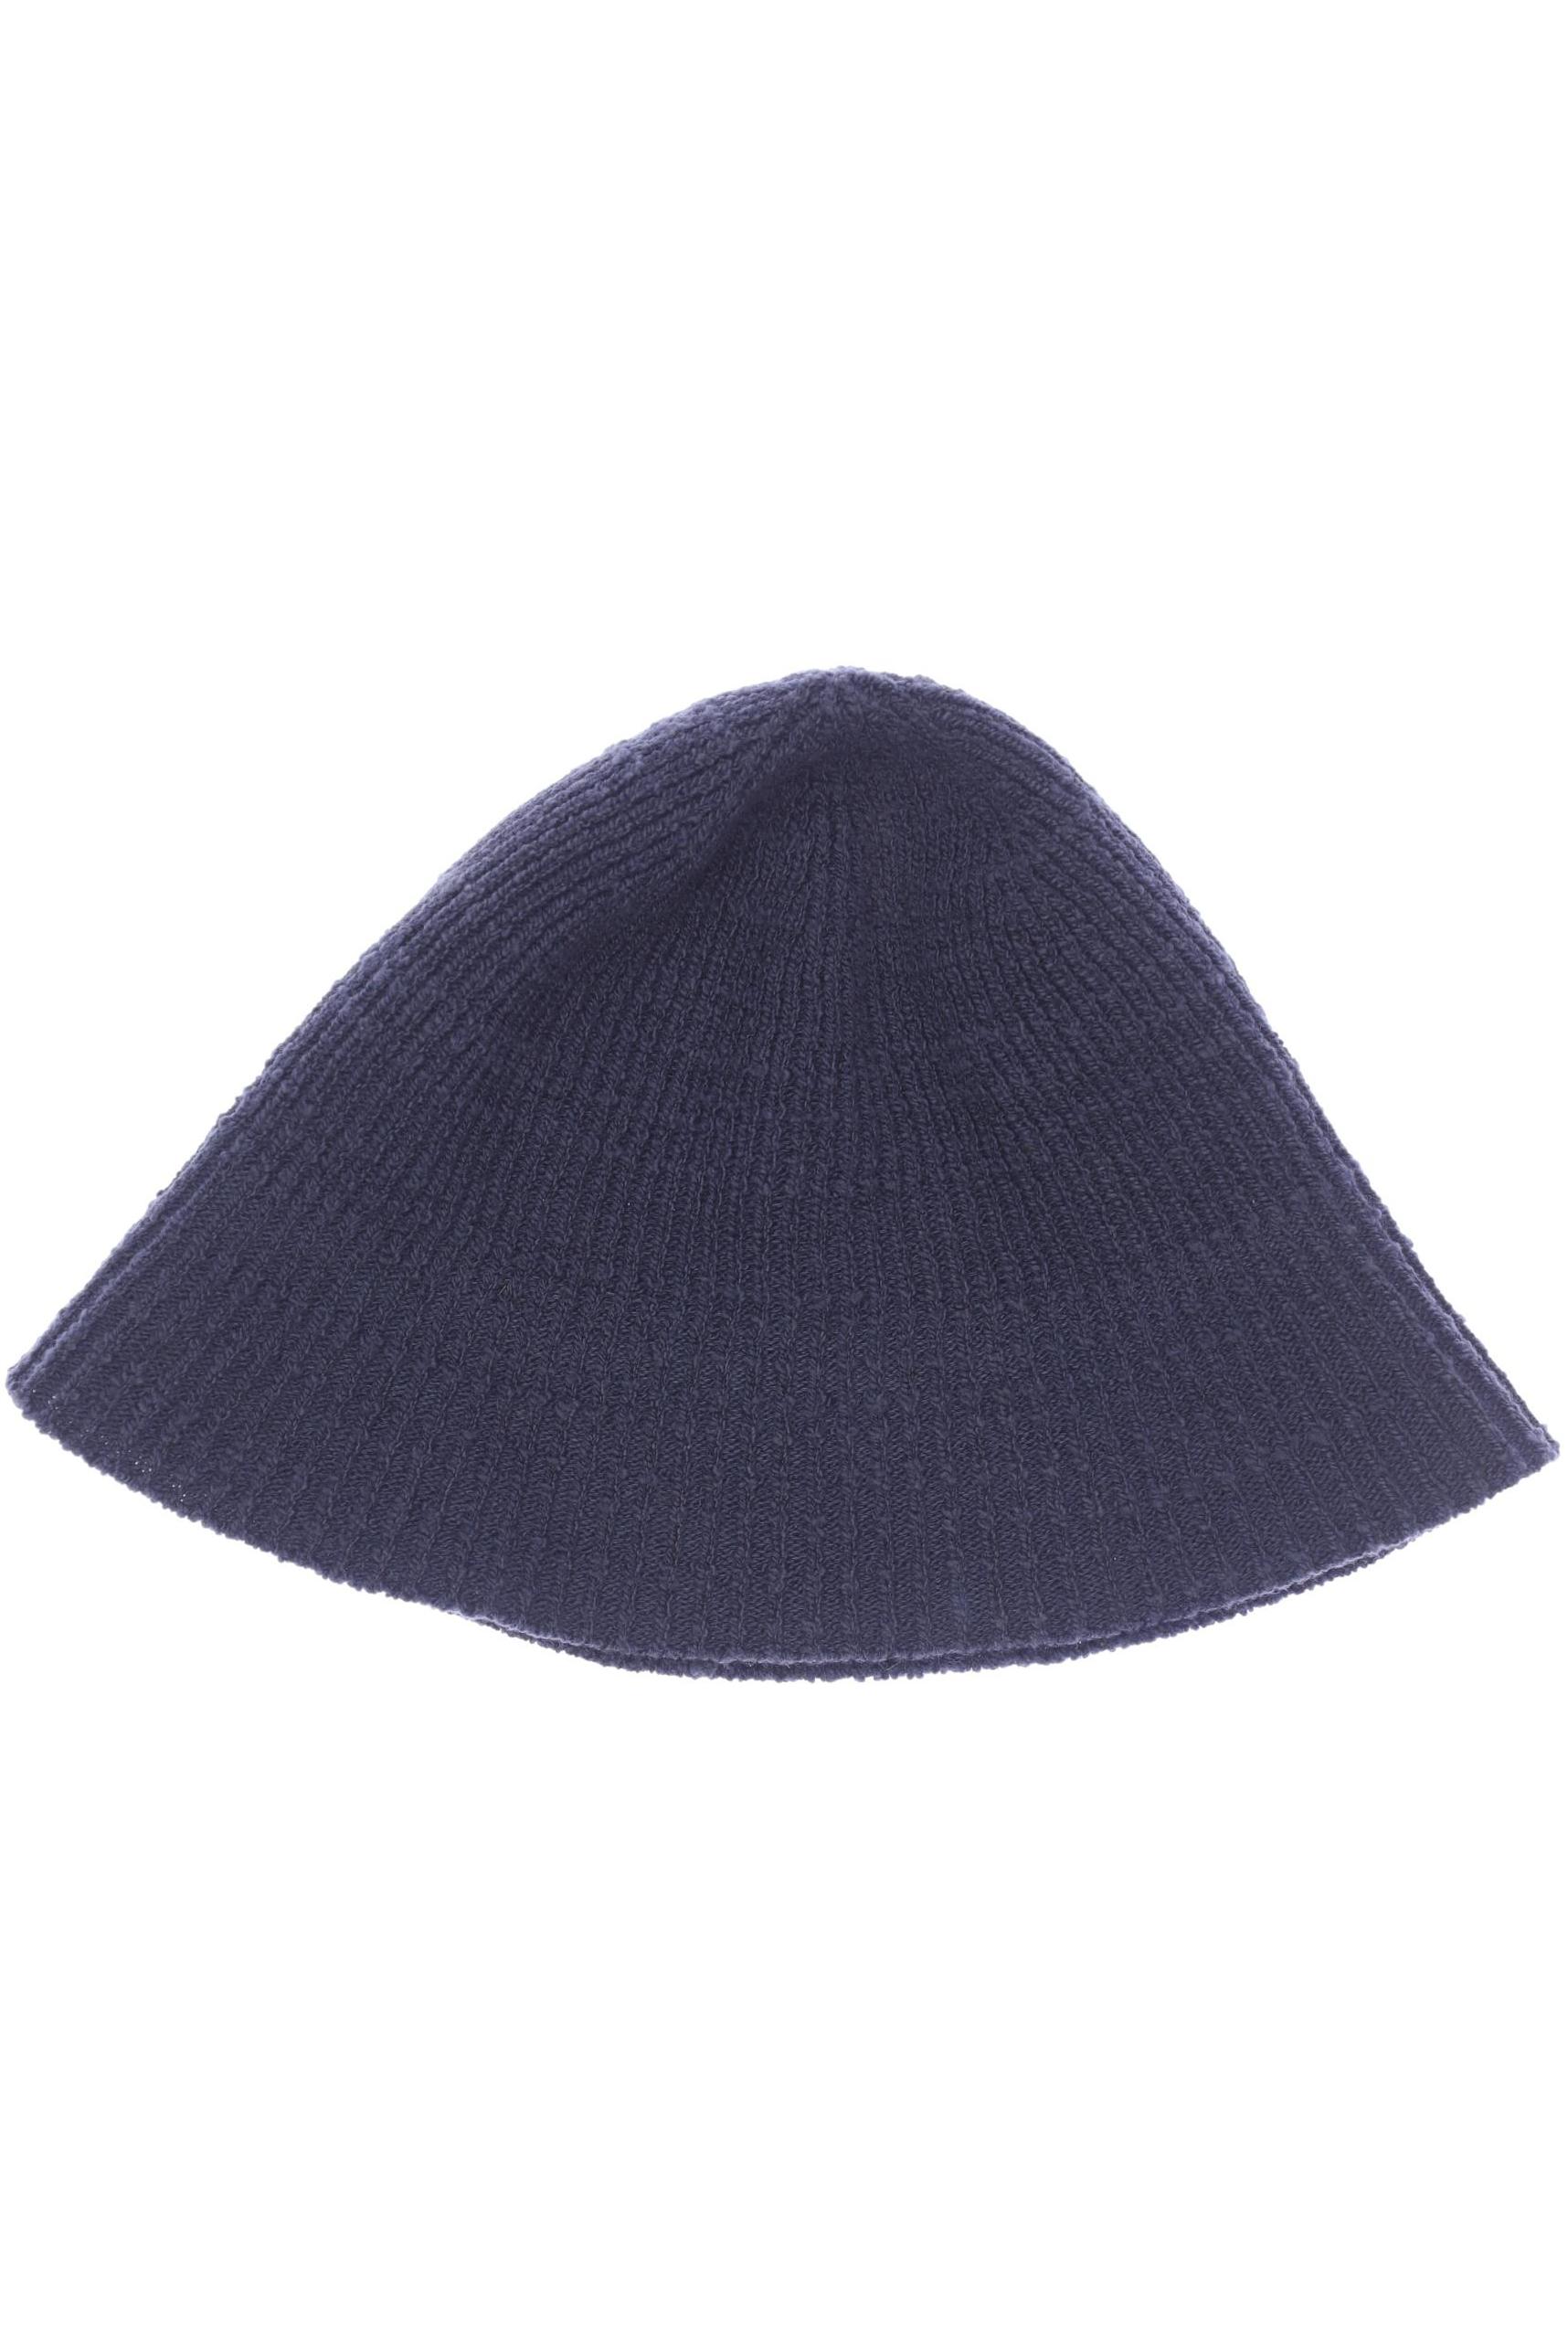 COS Damen Hut/Mütze, marineblau von COS